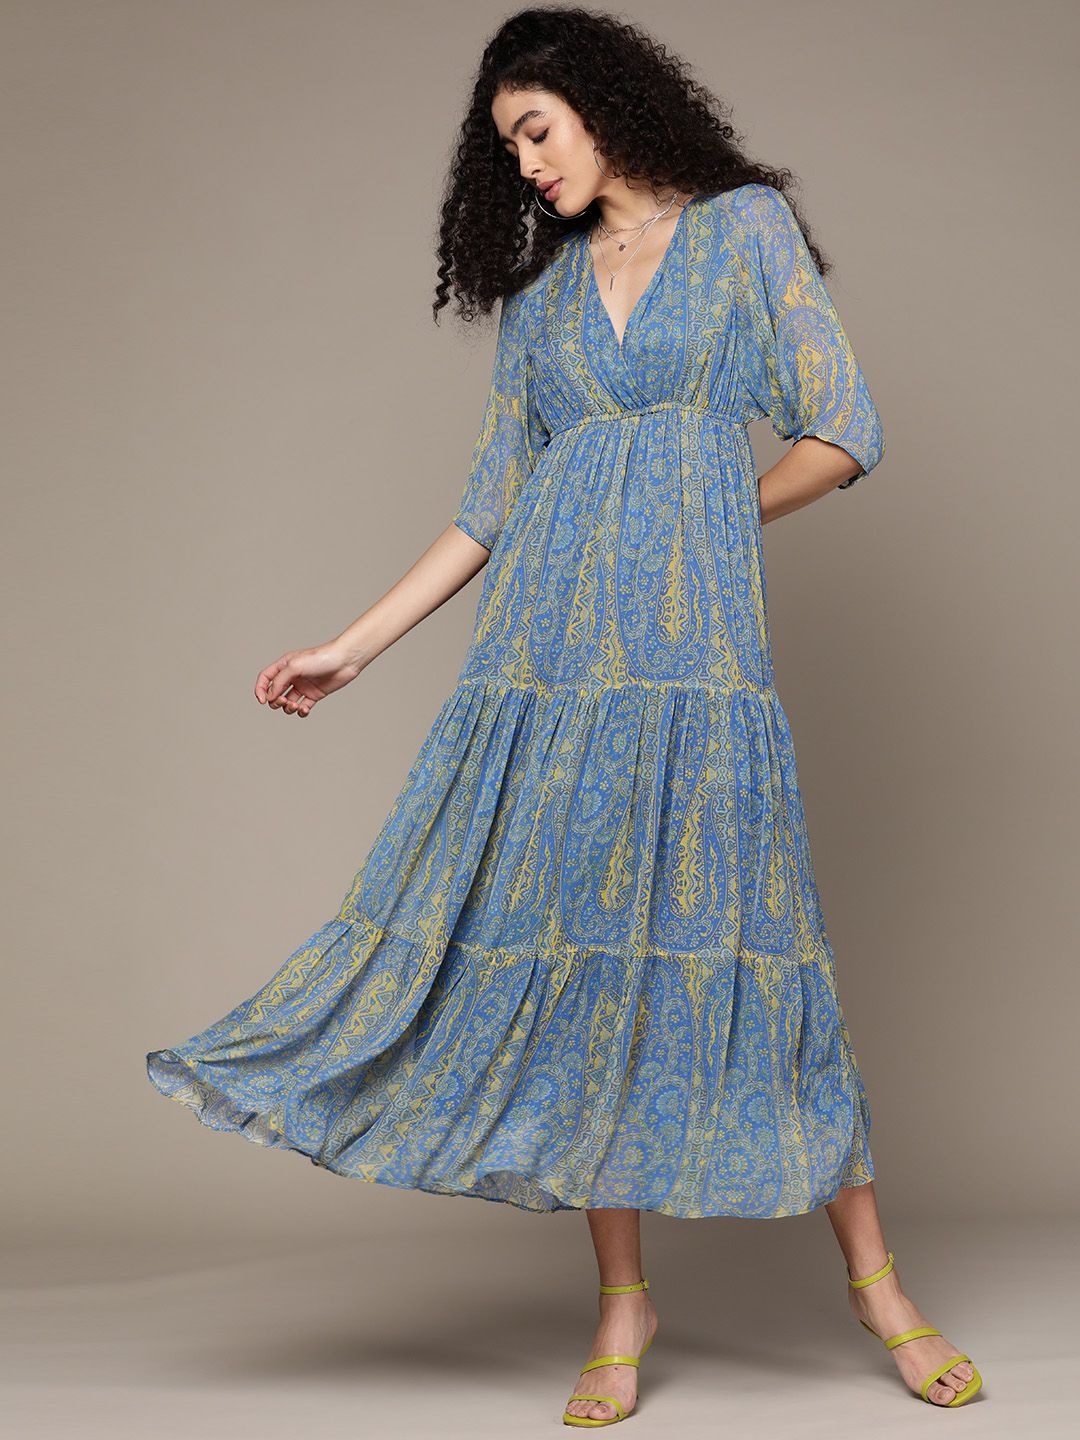 Label Ritu Kumar Blue Ethnic Motifs Georgette Midi Dress Price in India